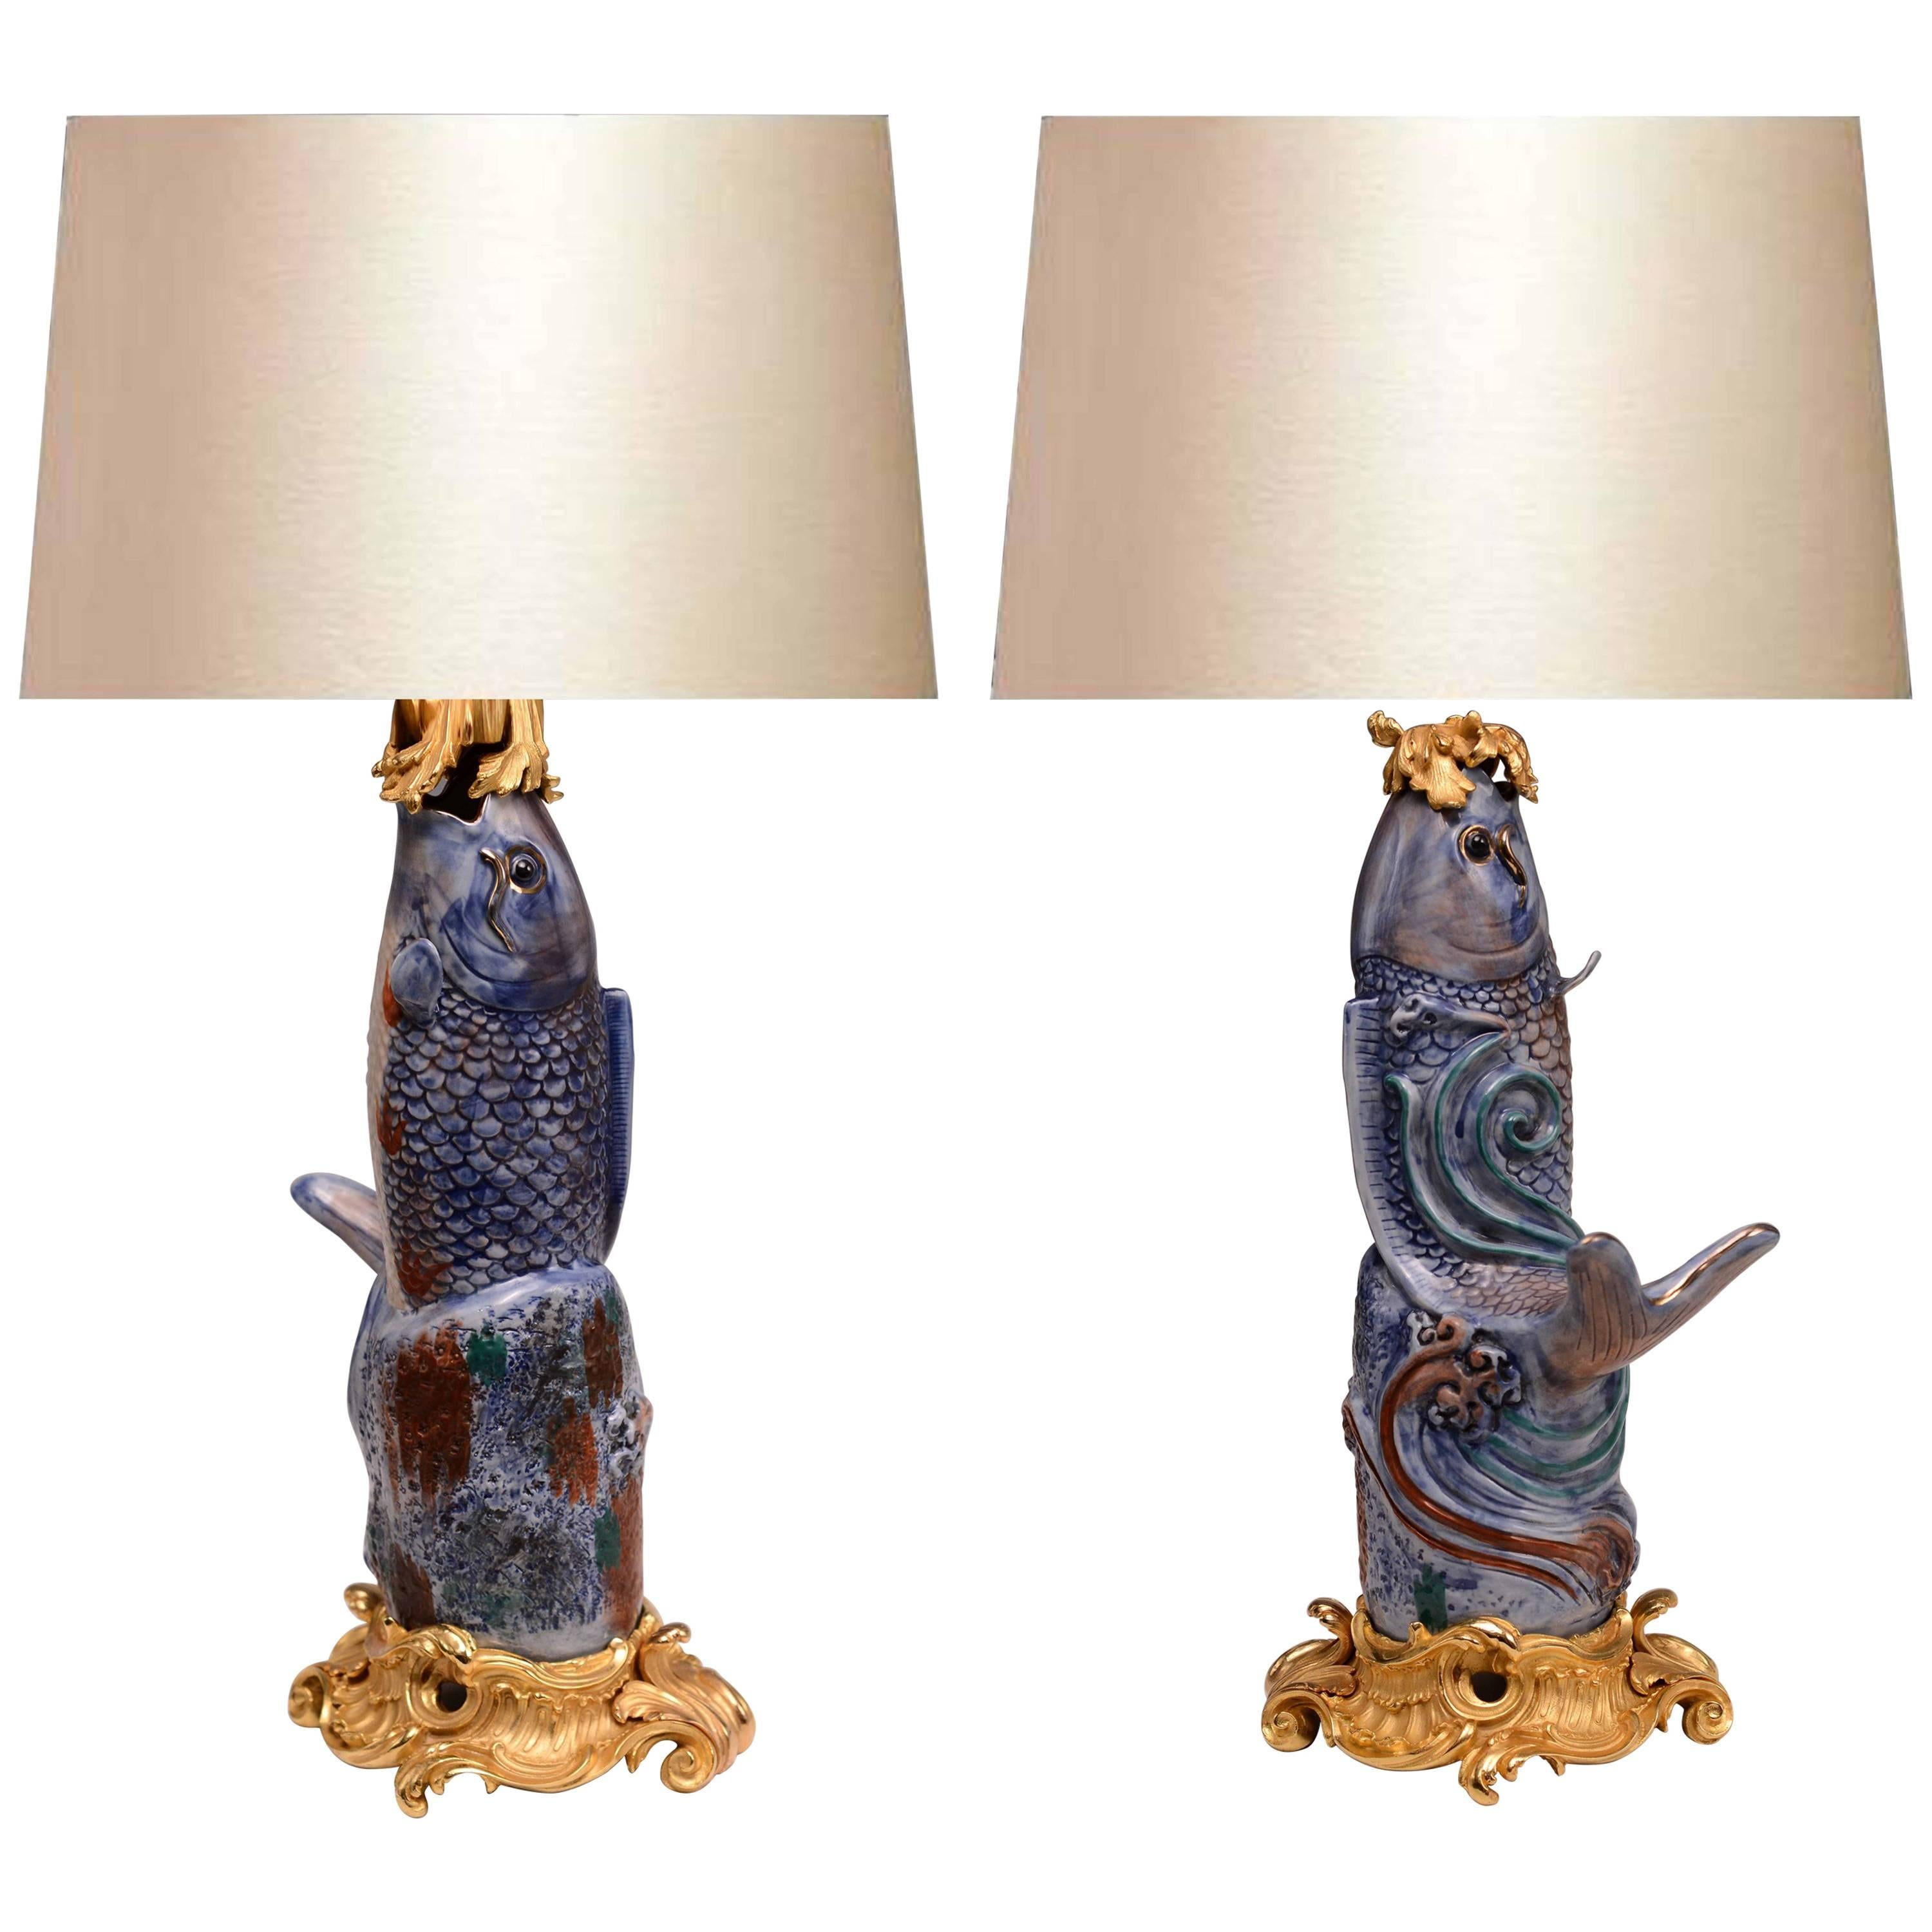 Paar Goldbronze-Porzellanfiguren von Fisch-Lampen